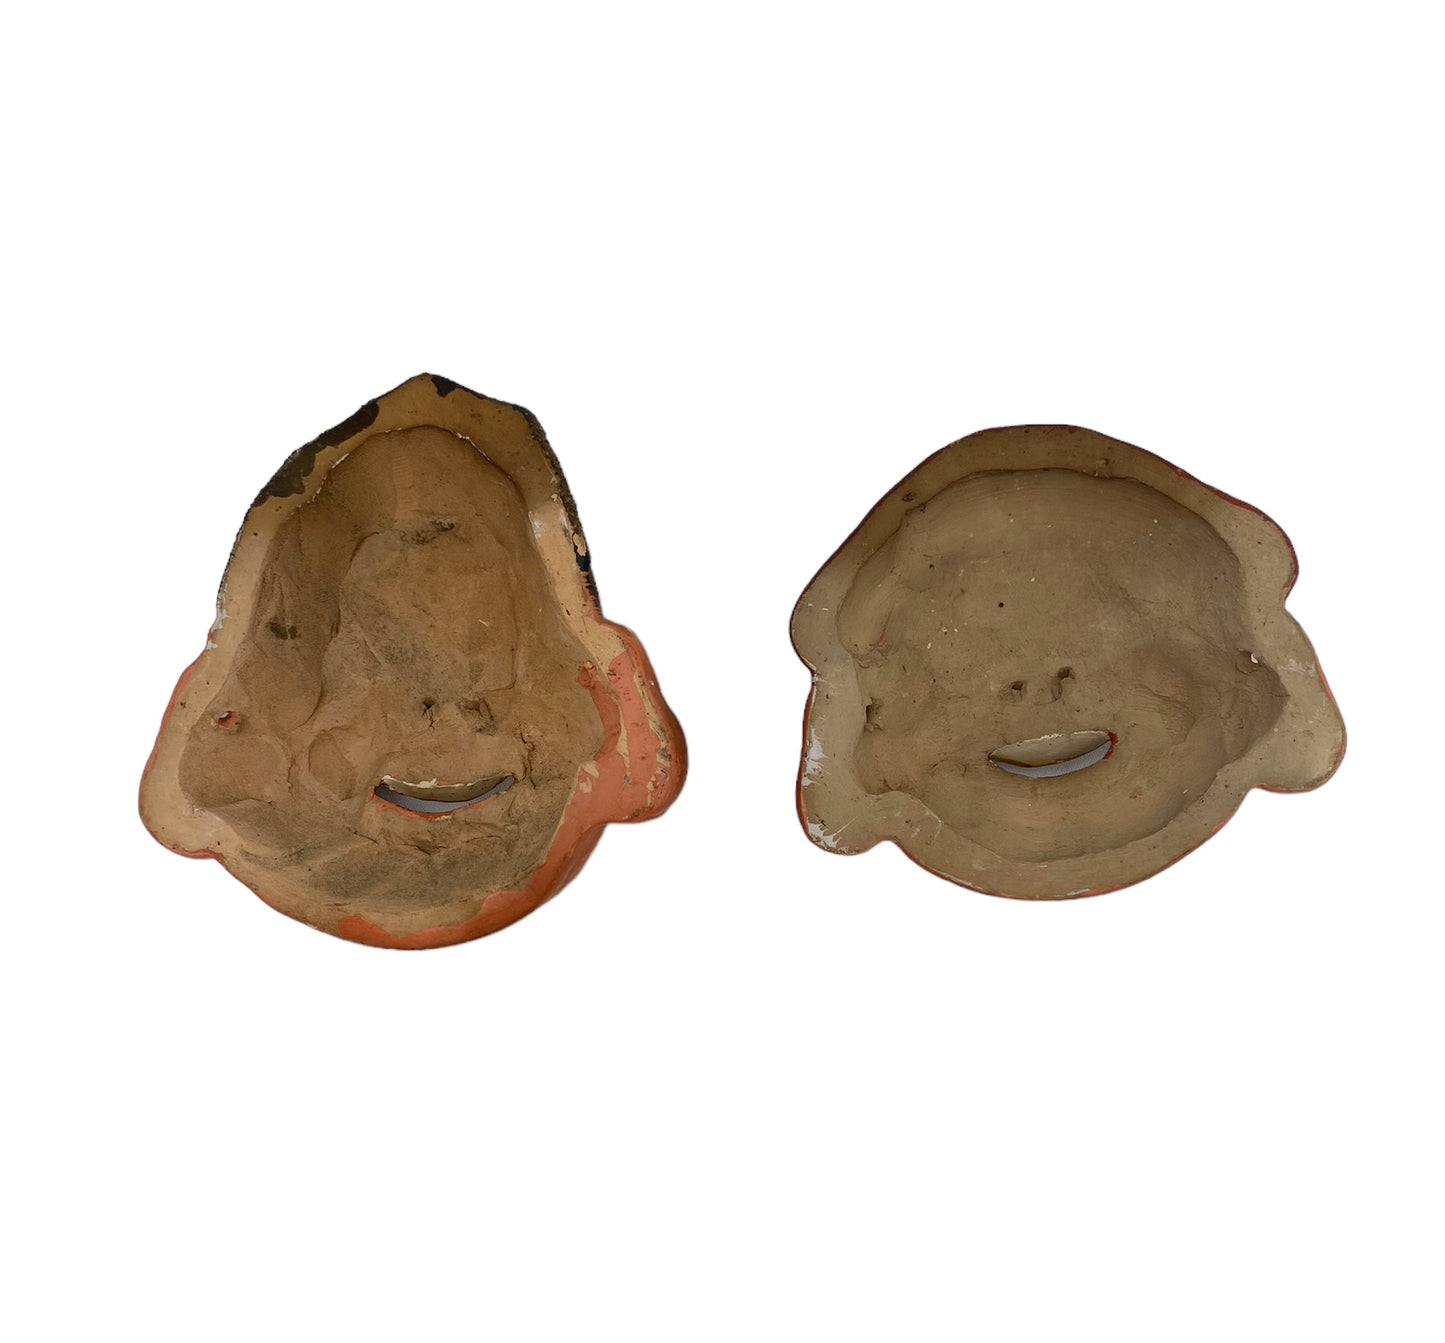 Small ceramic Daikoku and Ebisu masks.